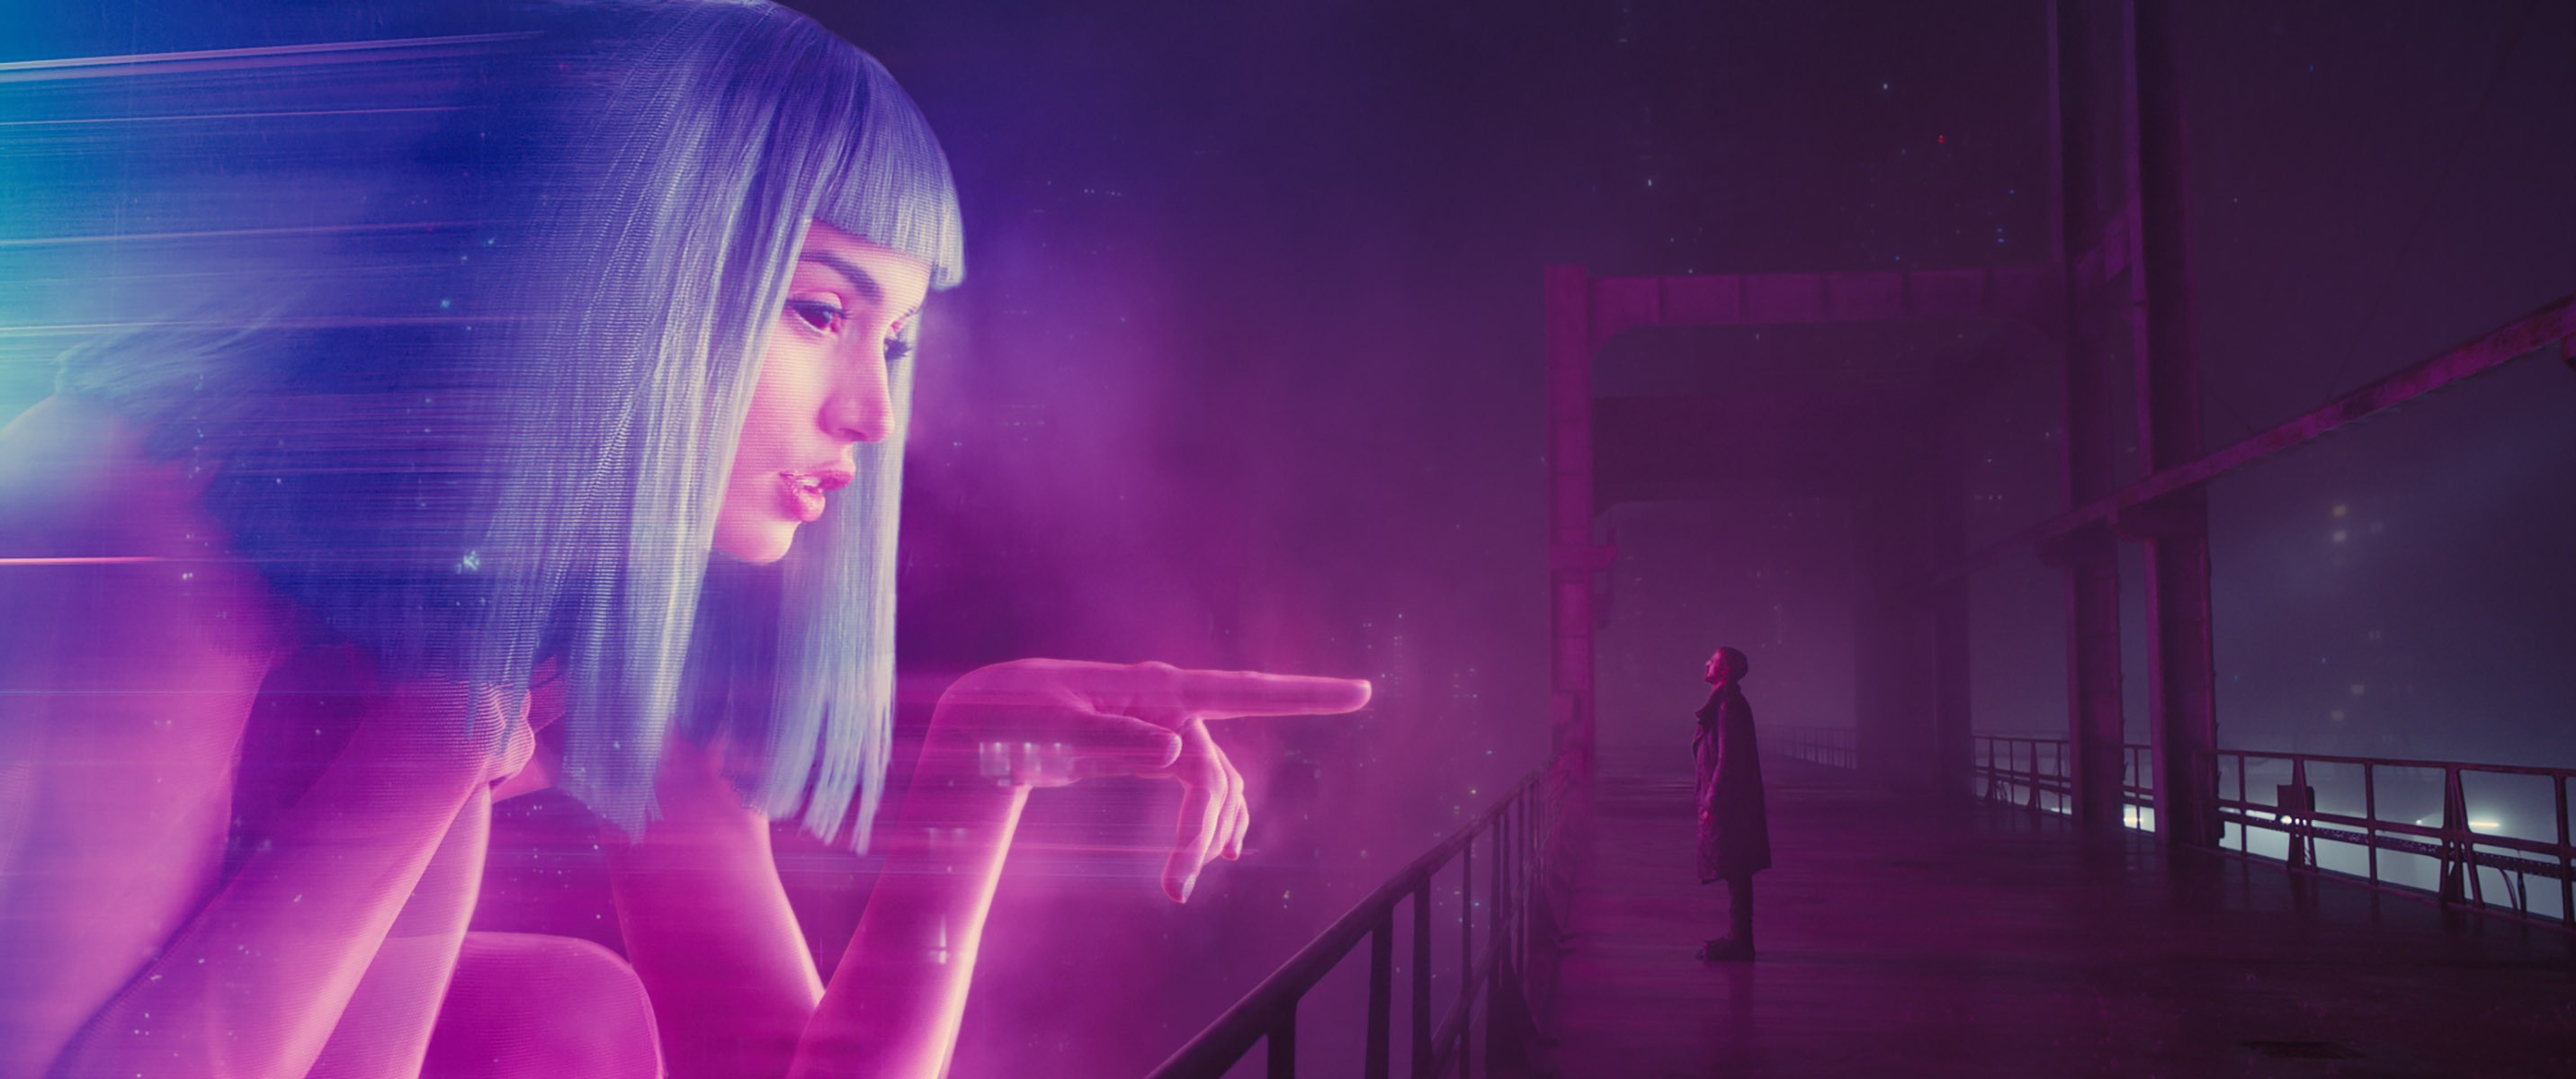 3 motivos que fazem 'Blade Runner 2049' a ficção científica deste século -  GQ | Cinema